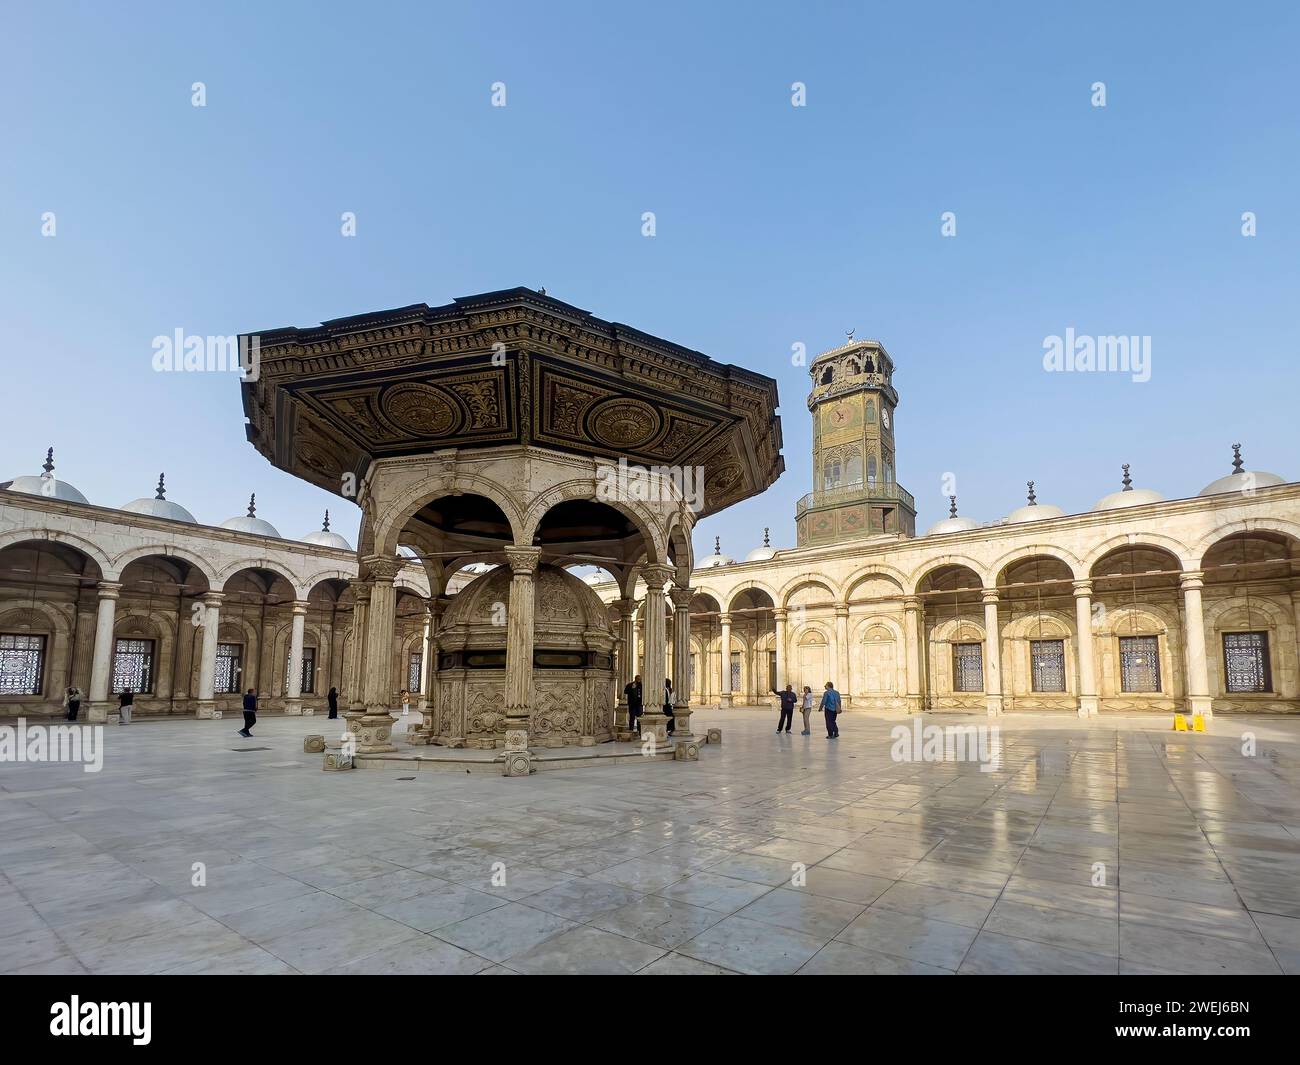 La mosquée Muhammad Ali de l'époque ottomane, achevée en 1848, surplombe le Caire depuis le sommet de la Citadelle, en Égypte. Banque D'Images